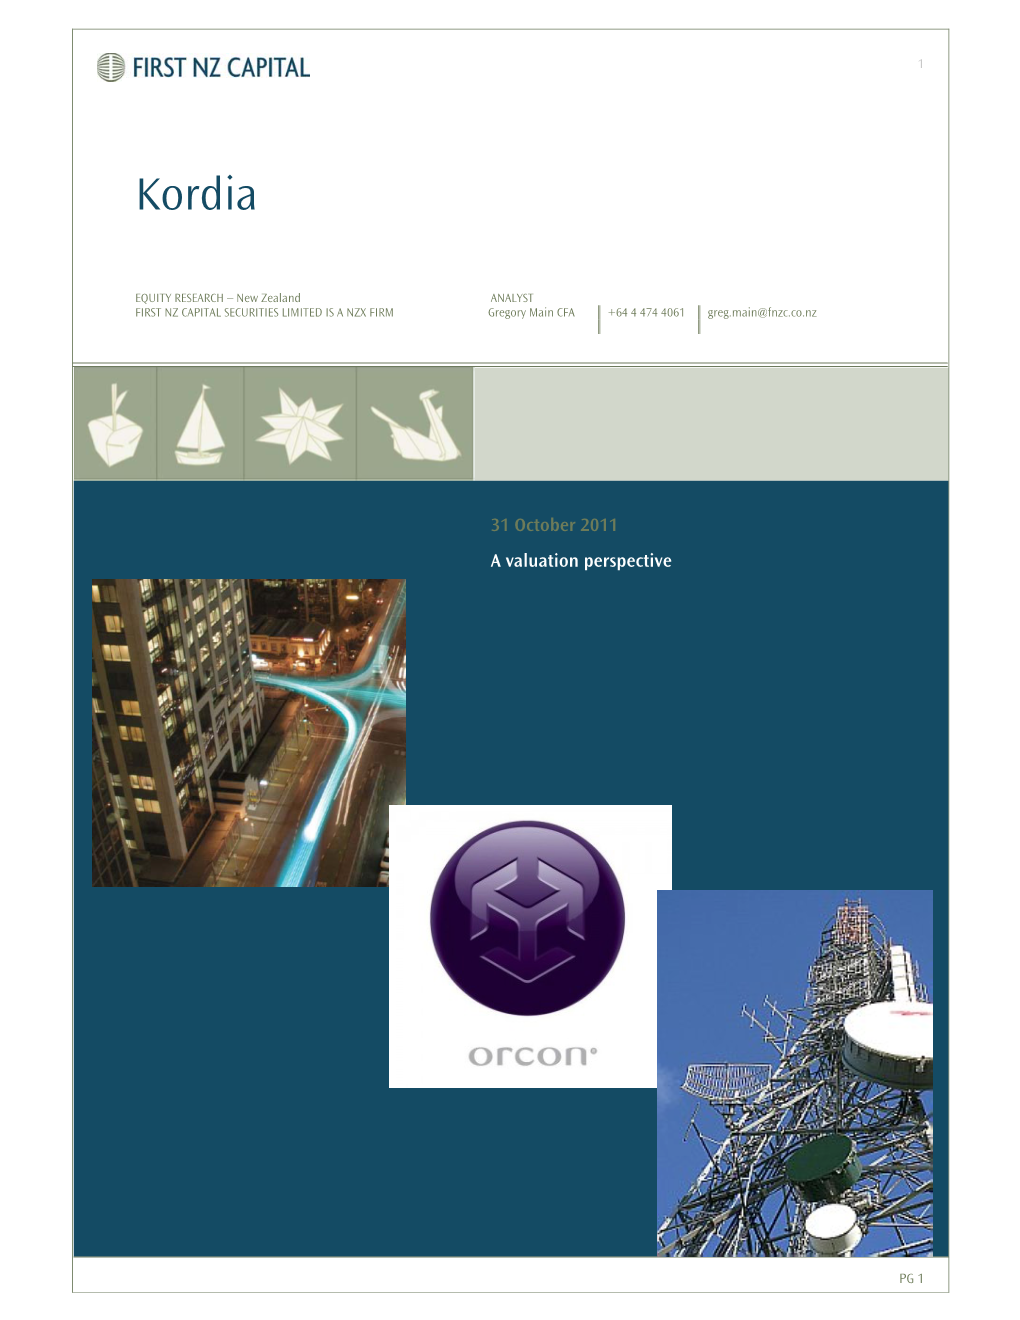 Kordia Group